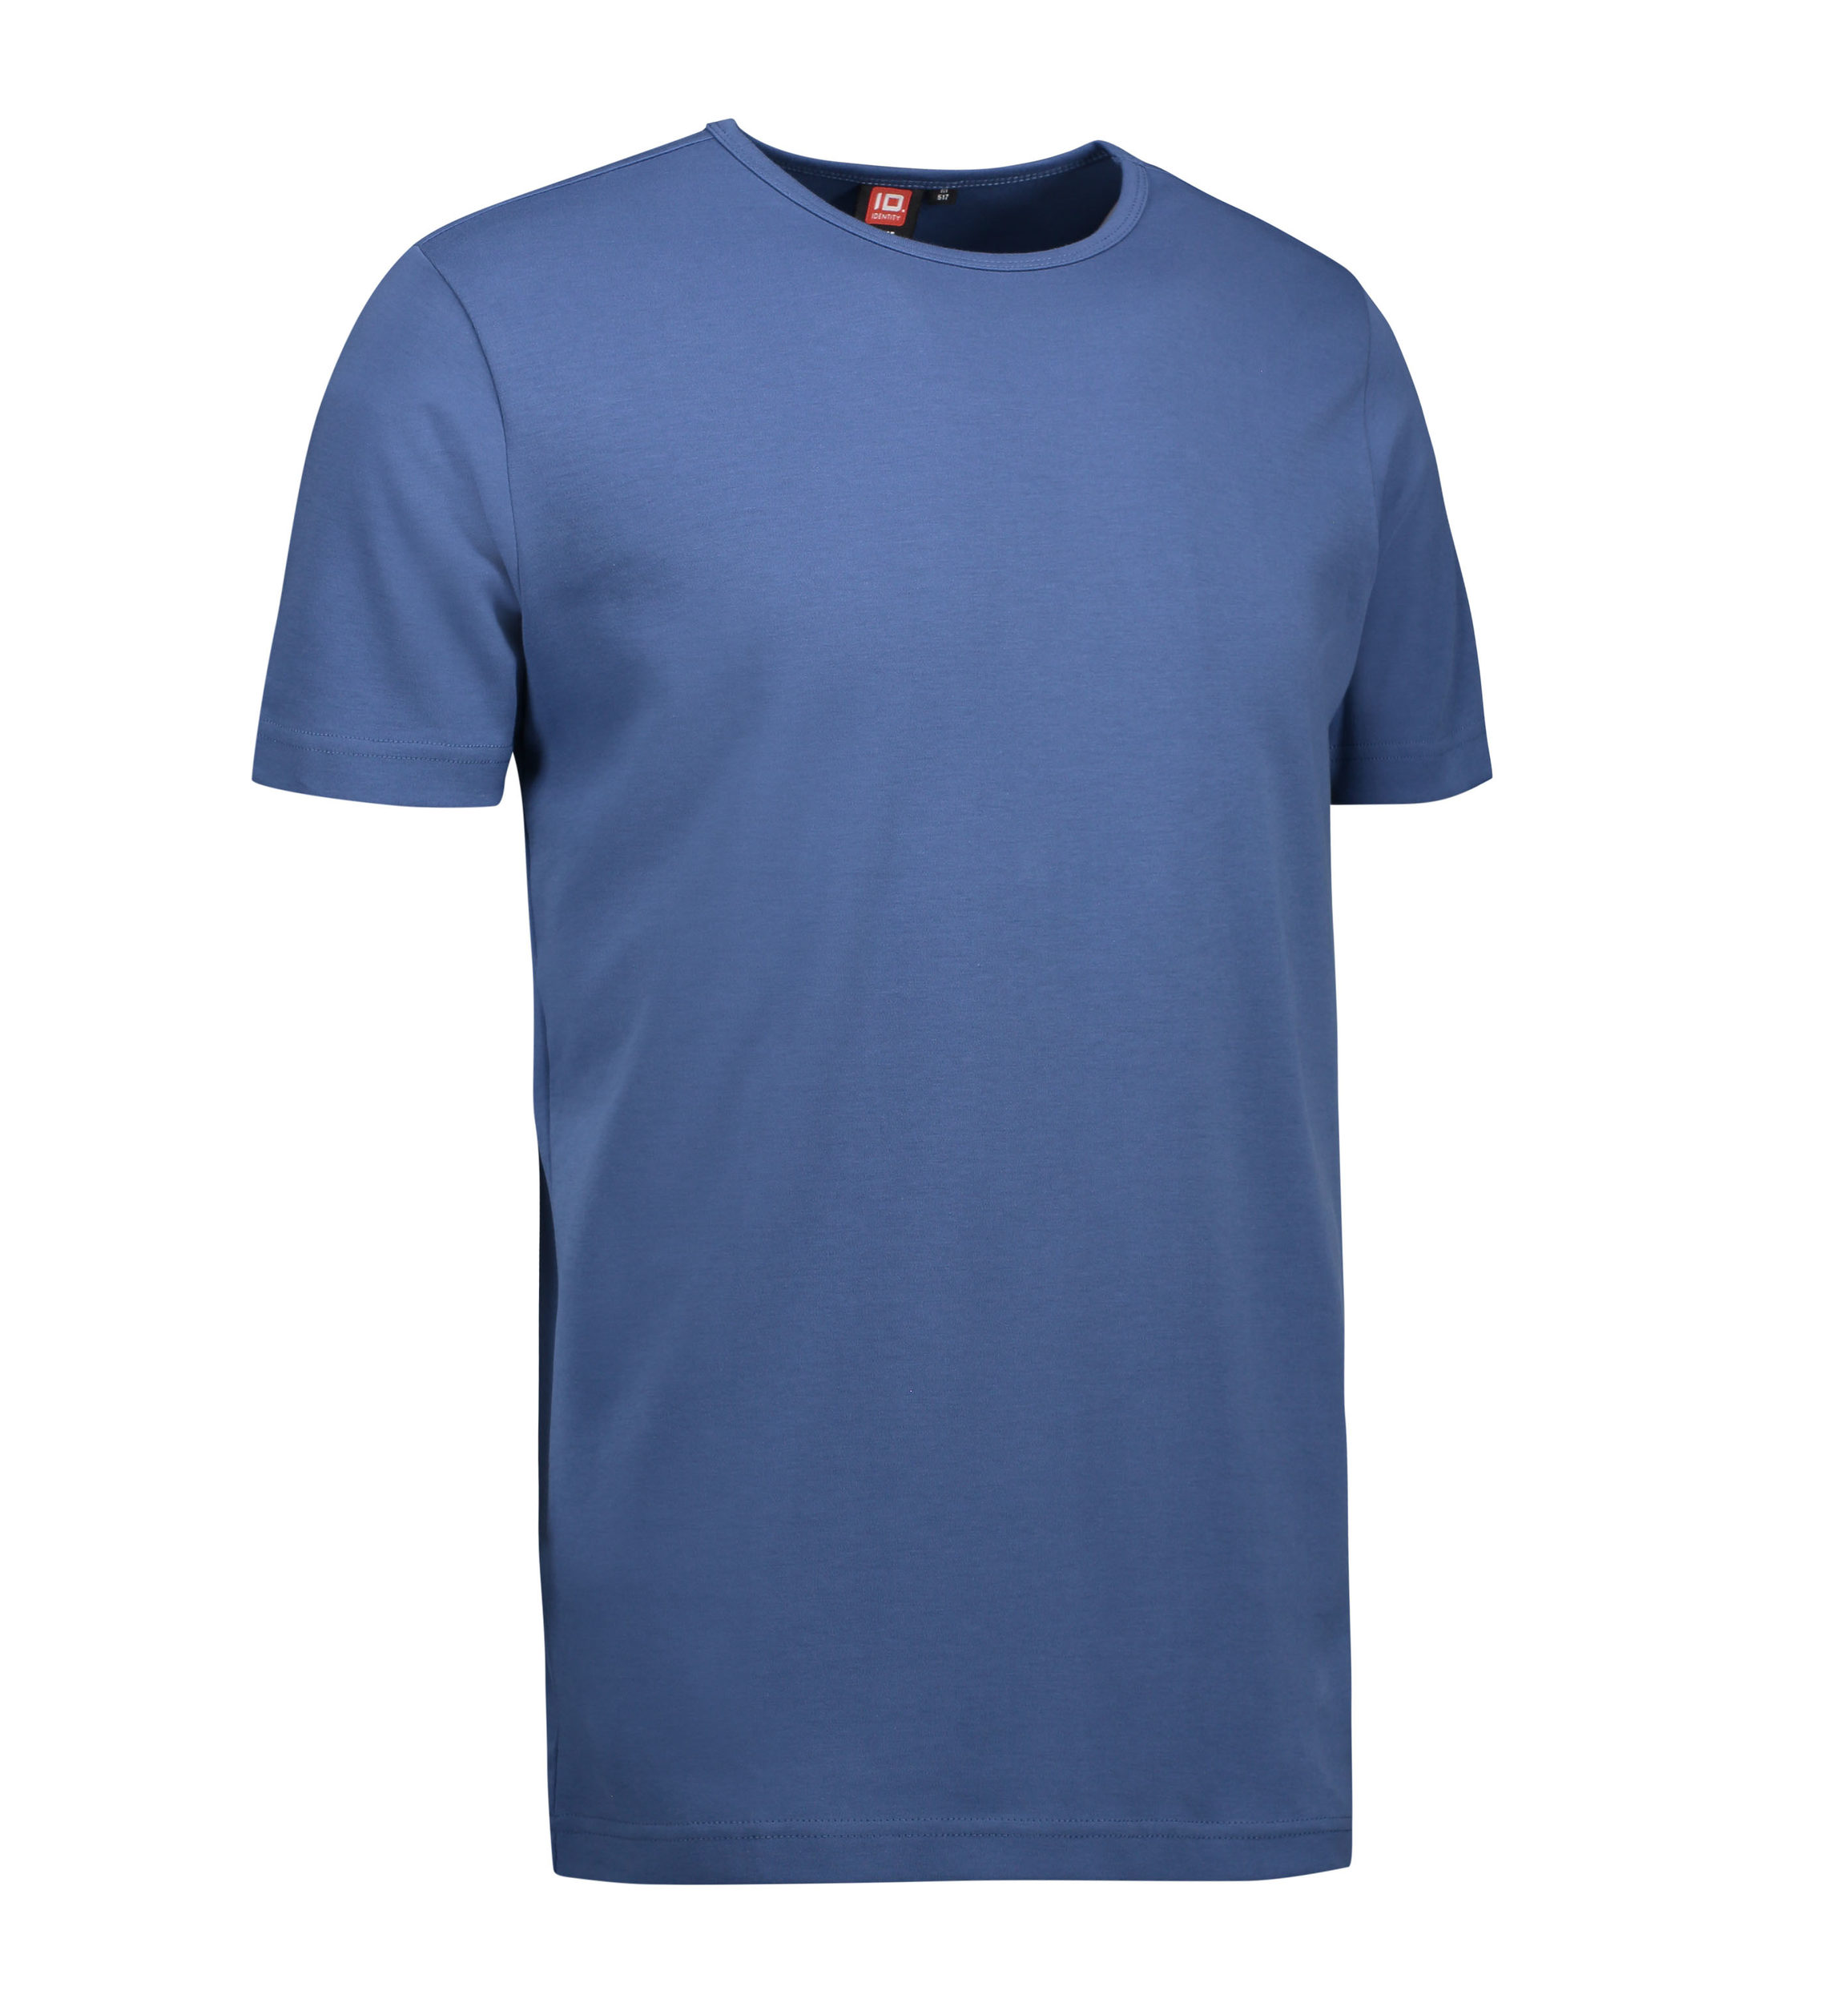 Billede af Indigo farvet t-shirt med rund hals til mænd - L hos Sygeplejebutikken.dk